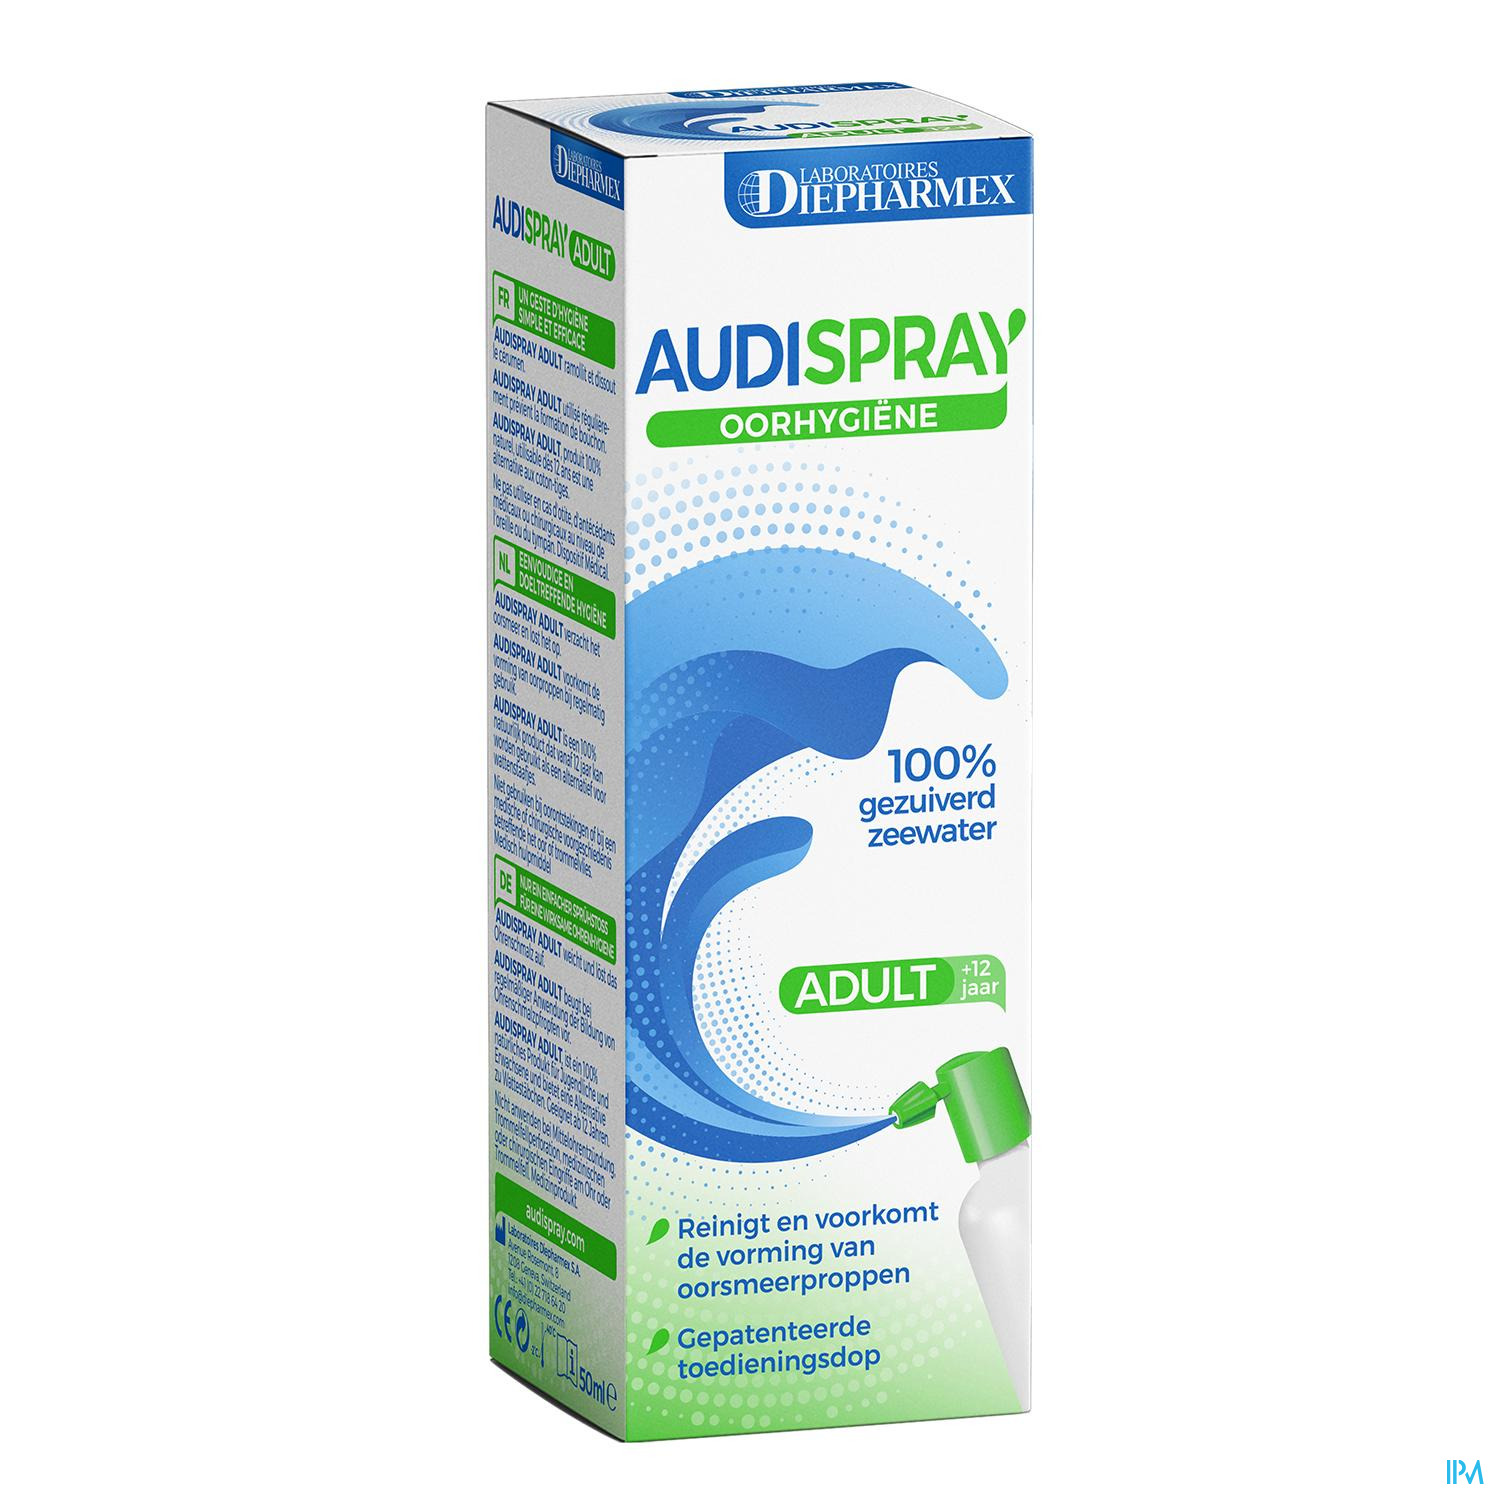 Audispray Adult - Audio [Packs]